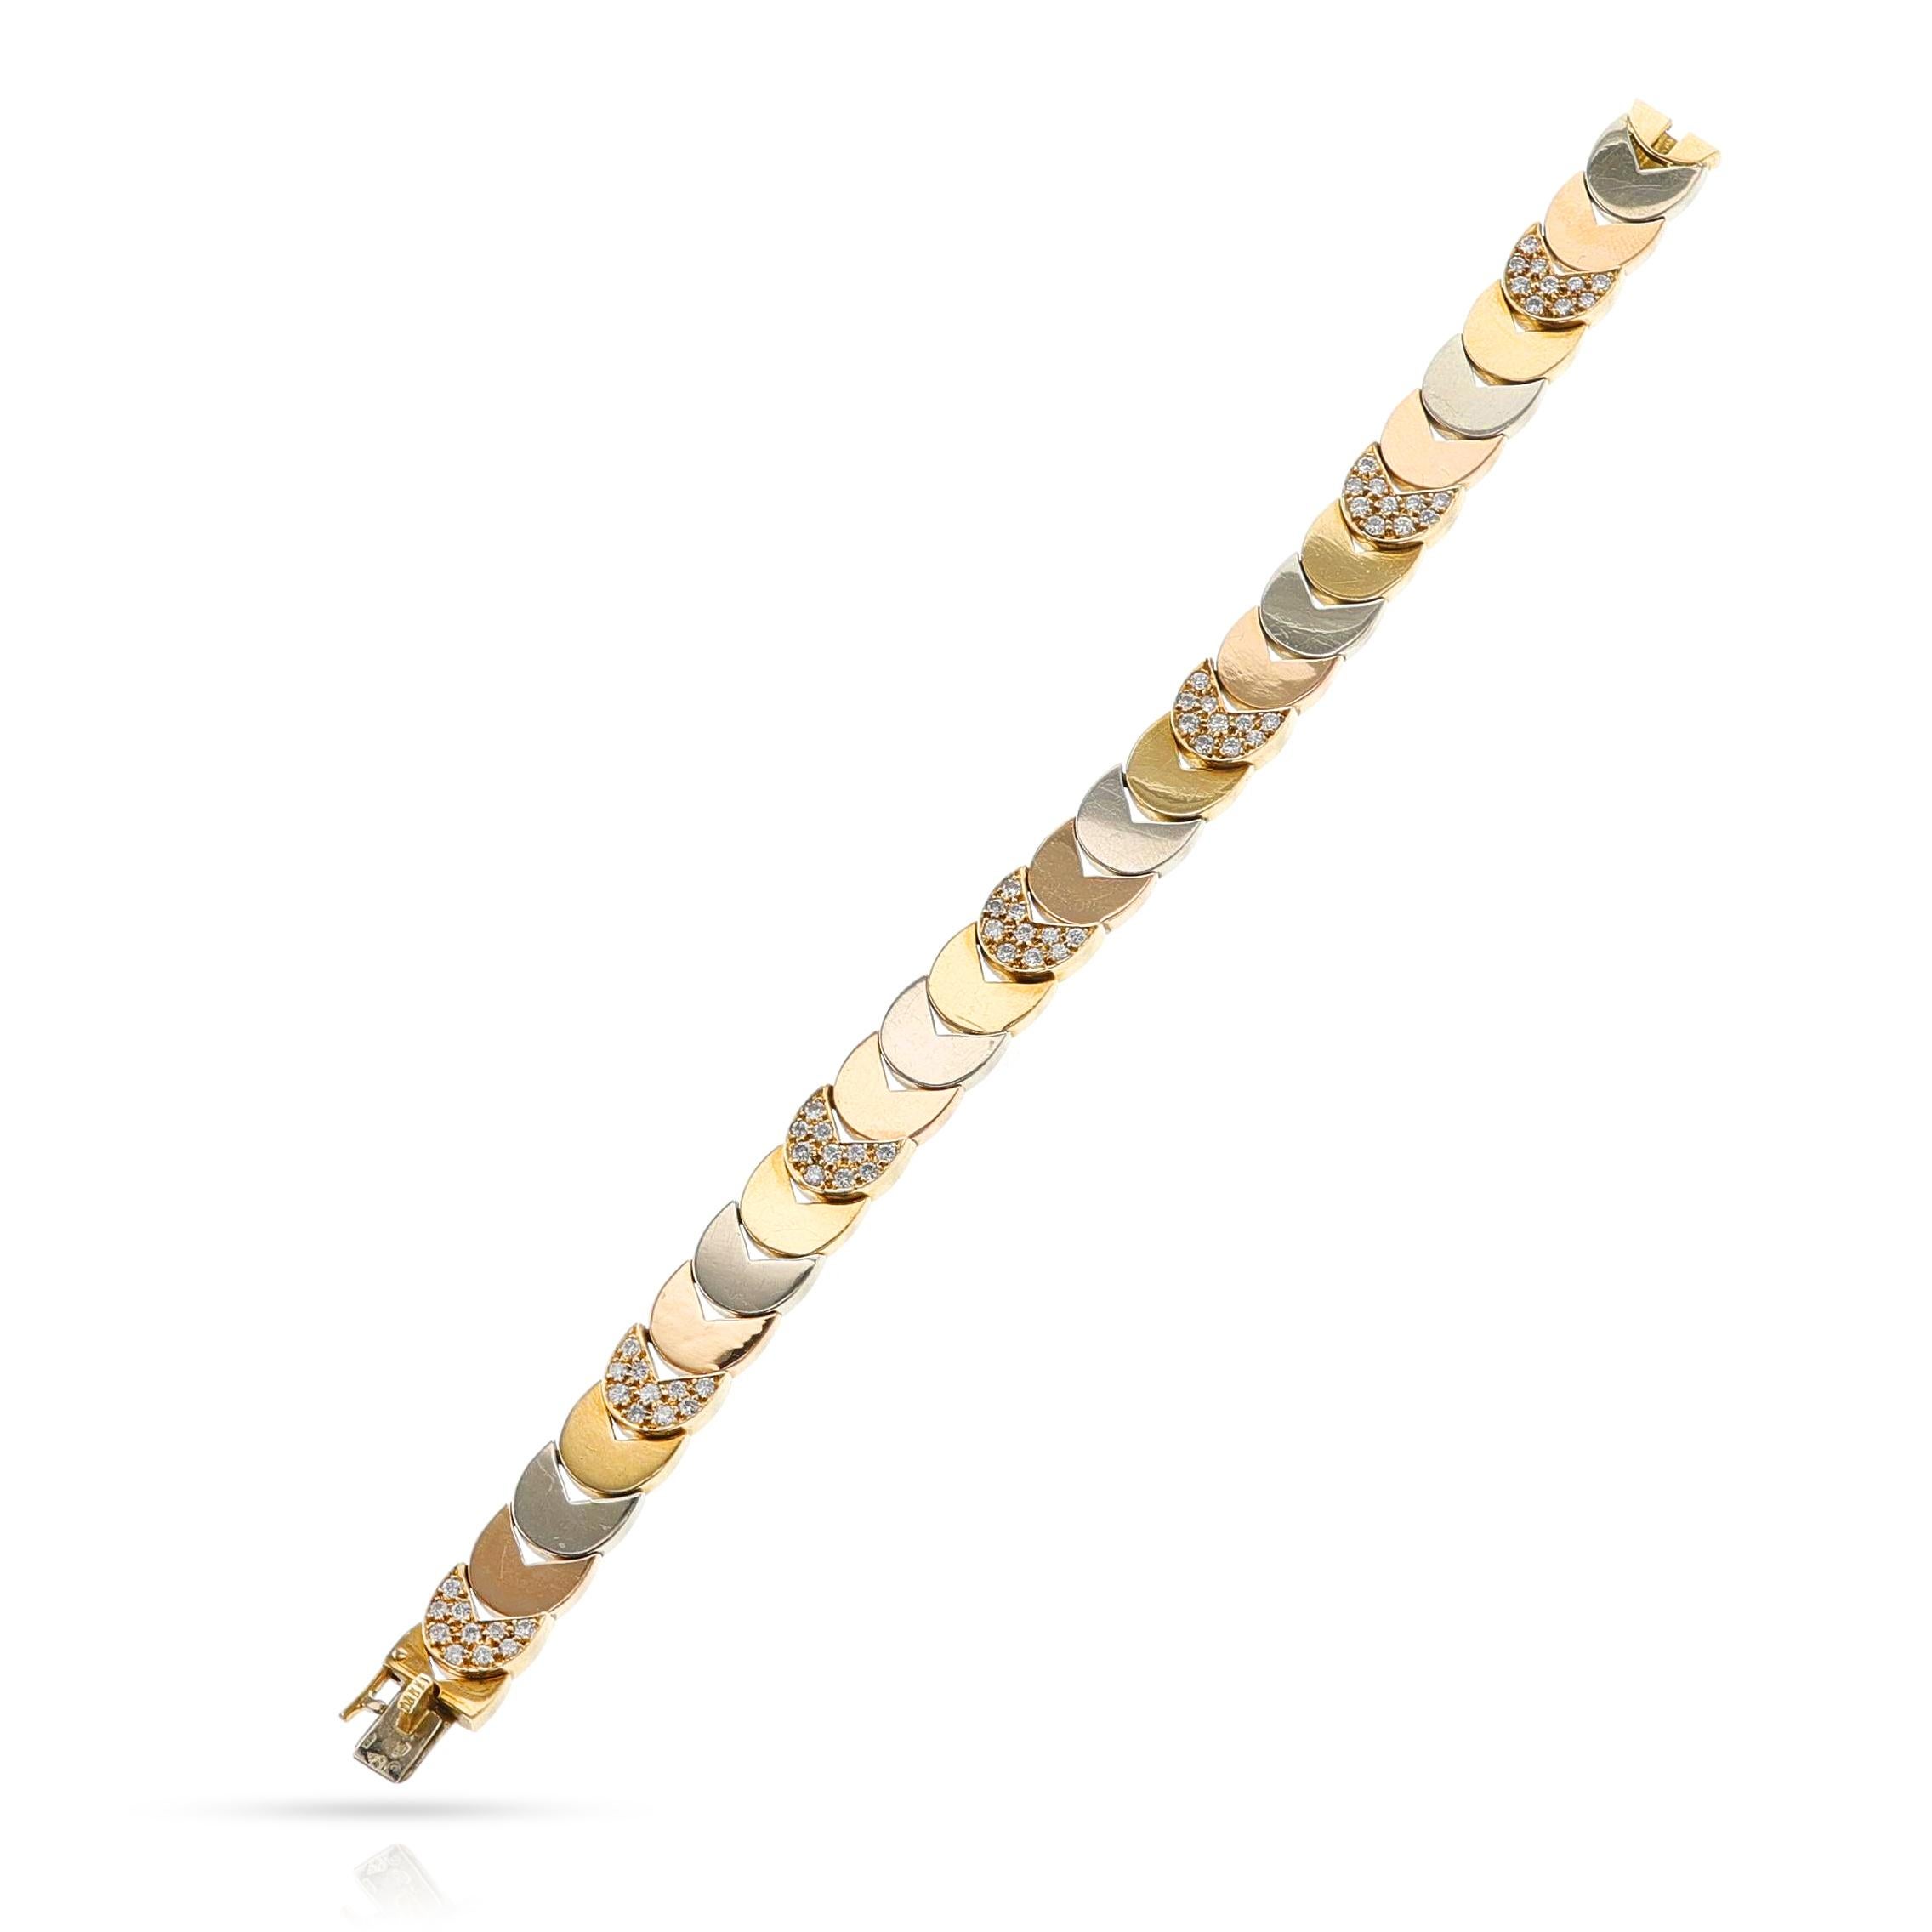 Bracelet Van Cleef & Arpels en or tricolore et diamants par Georges L'enfant, 18k. Longueur : 18 cm. Le poids total est de 37,03 grammes. Signé et numéroté. Poinçon de Jewell : Georges L'enfant.

SKU : 1458-EAJAPLWU